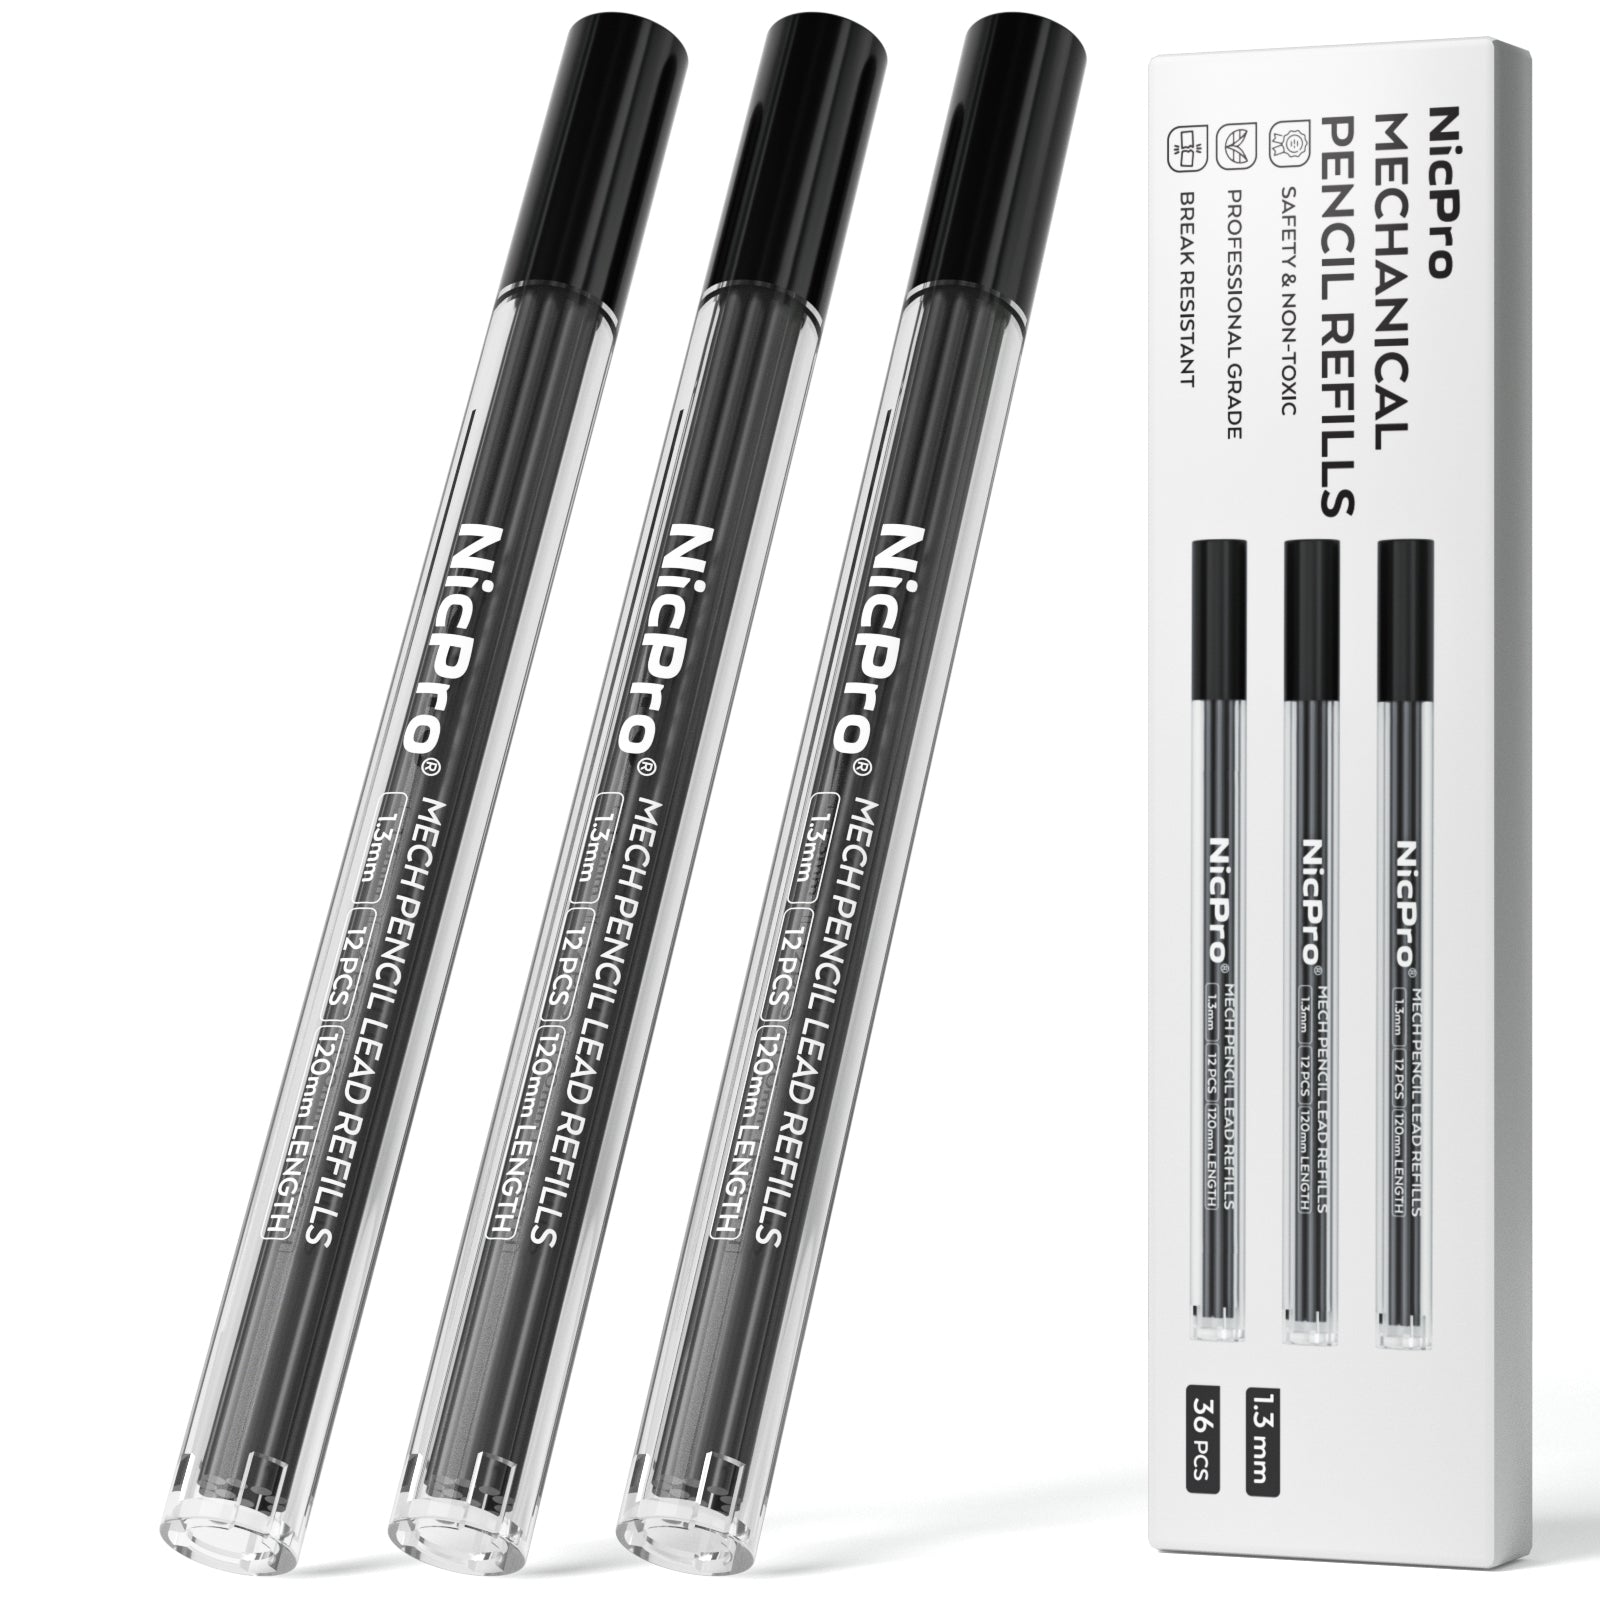 Mechanical Pencil Lead Refills - QTS (HB 1.3 mm)